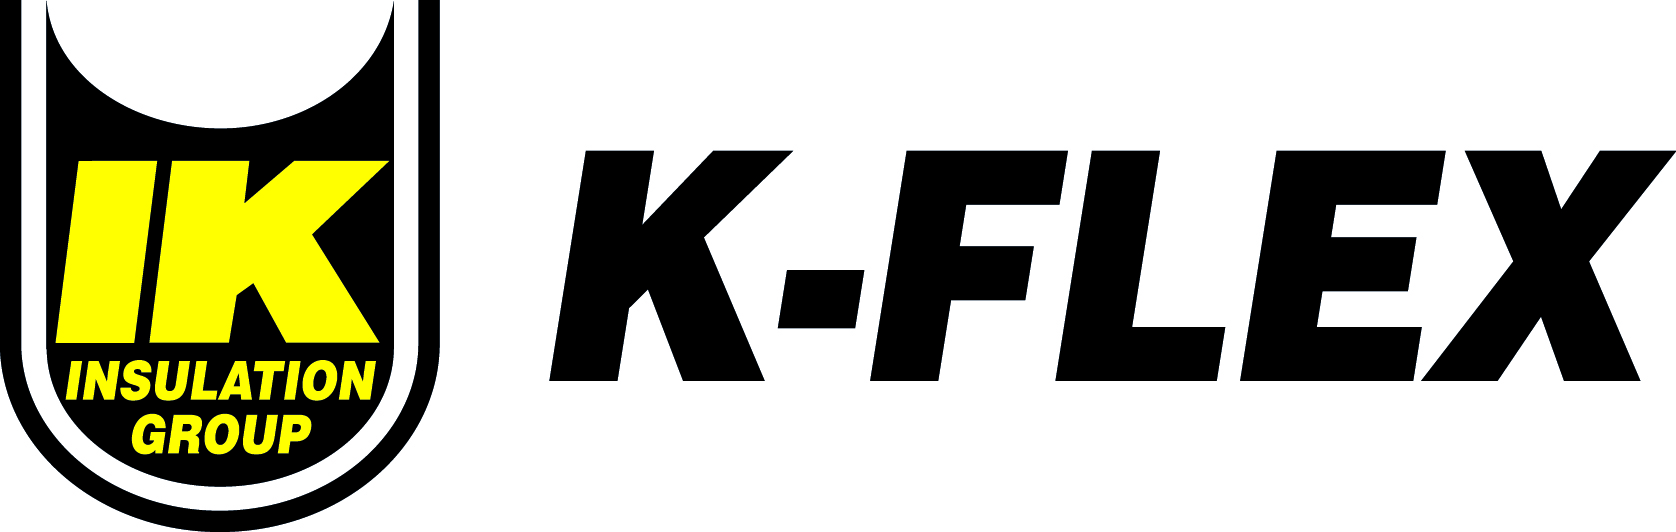 Компания флекс. Flex логотип. K-Flex лого. ООО Флекс. Ik Insulation Group k-Flex логотип.